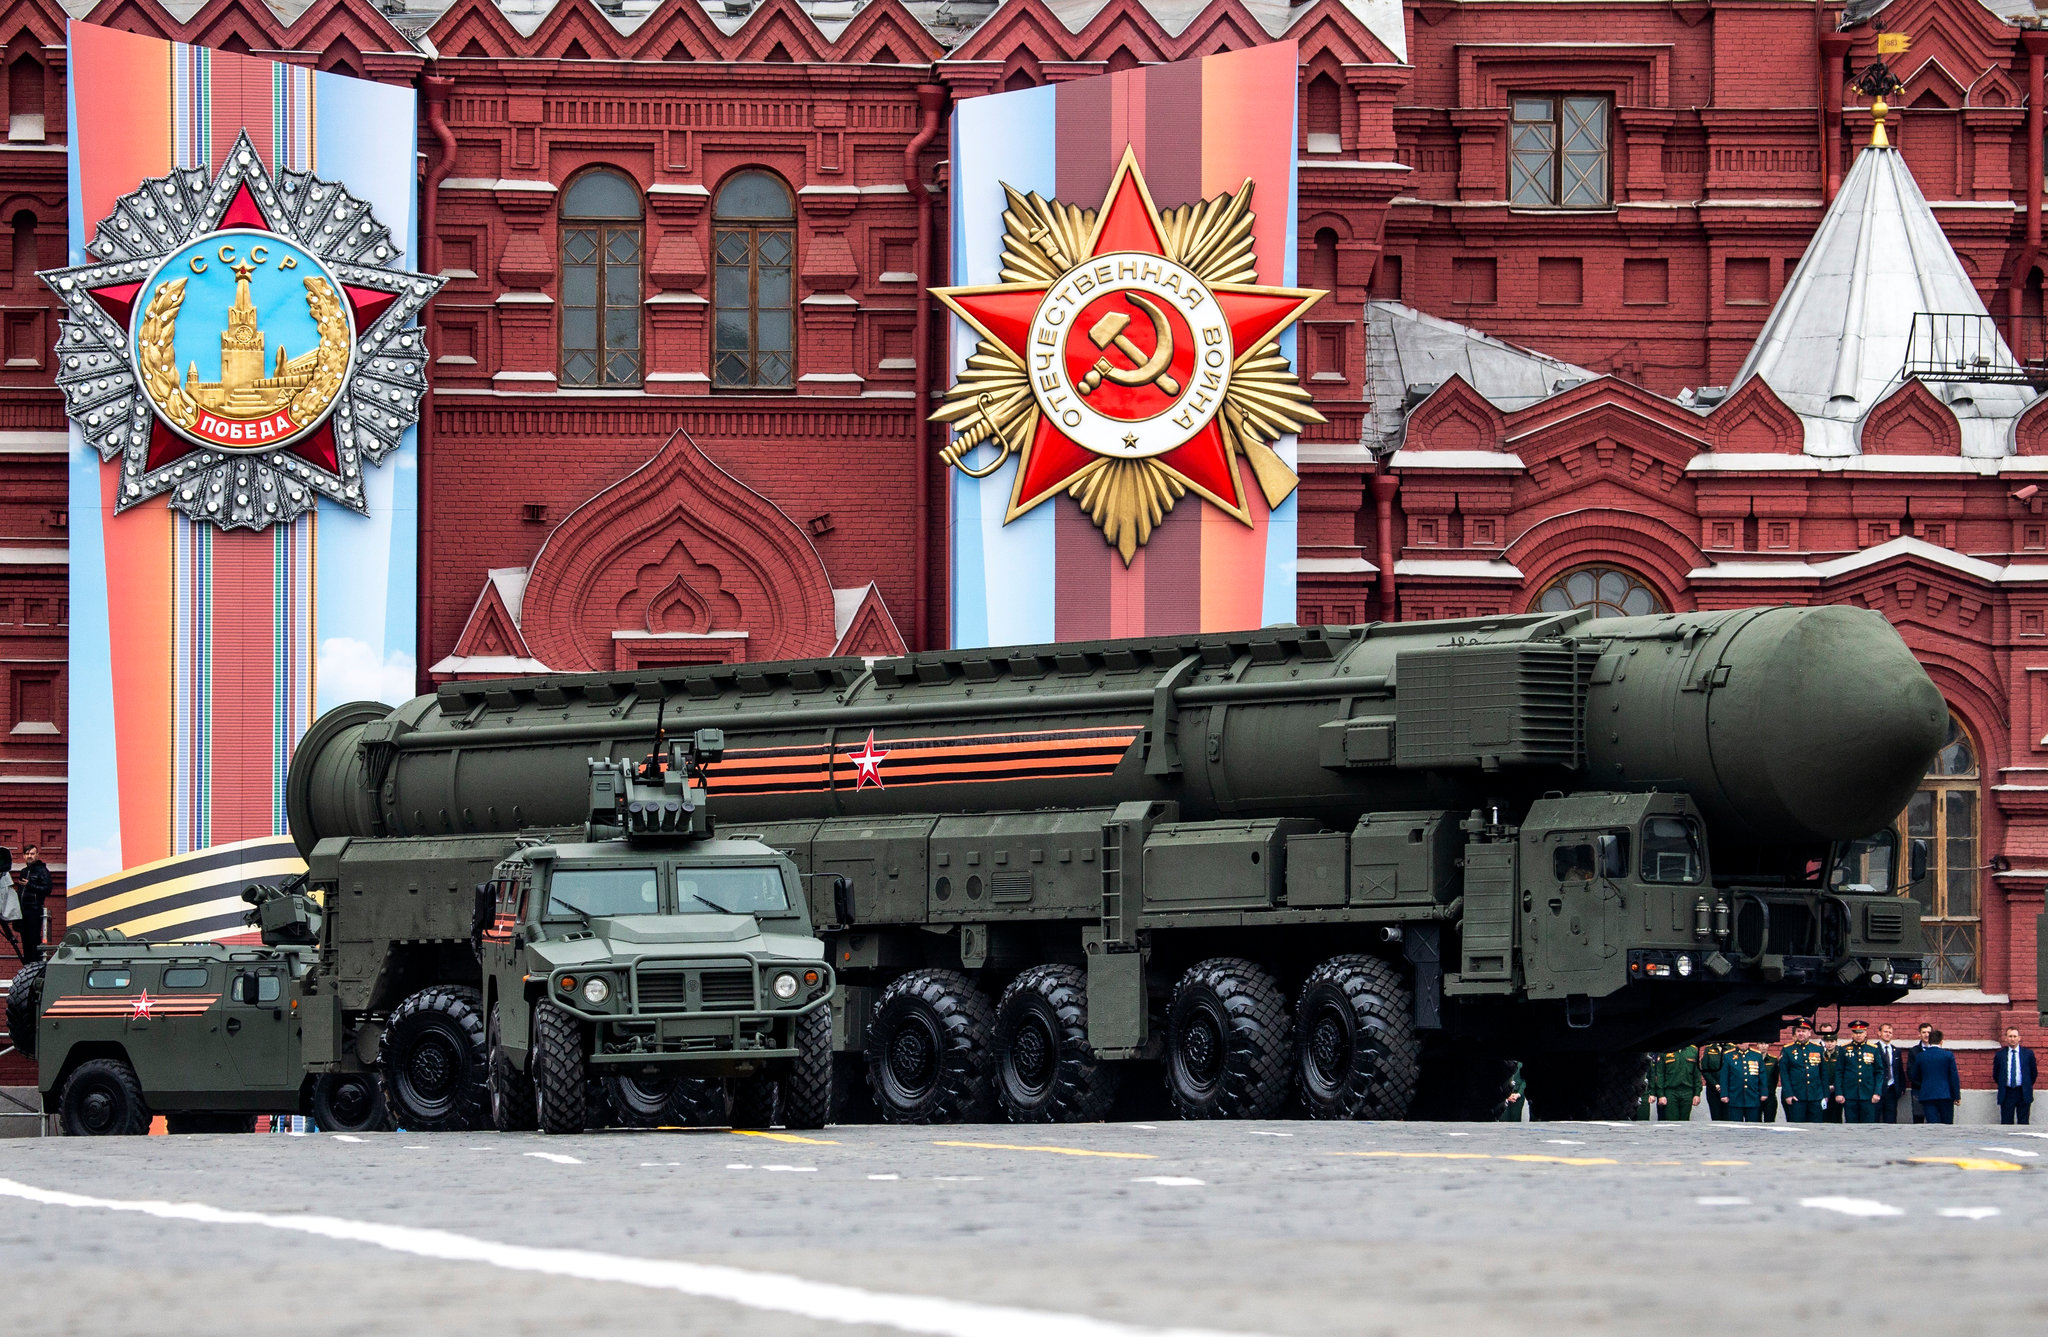 Η Ρωσία θα συνεχίσει να τηρεί τα όρια στον αριθμό των πυρηνικών κεφαλών της συνθήκης New START